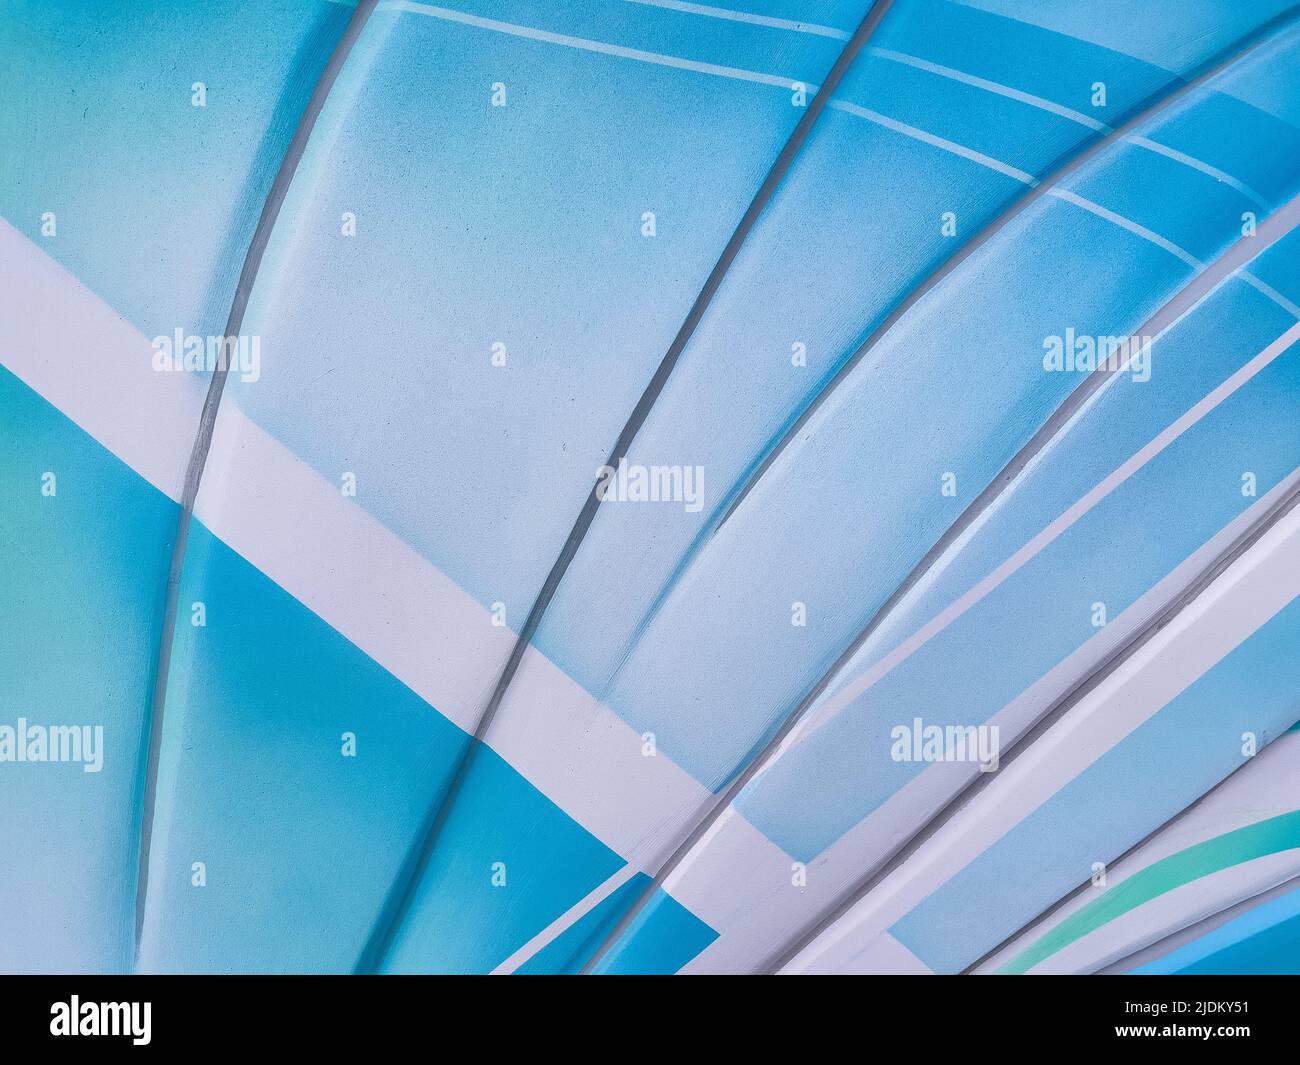 Abstrakter Hintergrund mit blauem Verlauf - Stockfoto Stockfoto